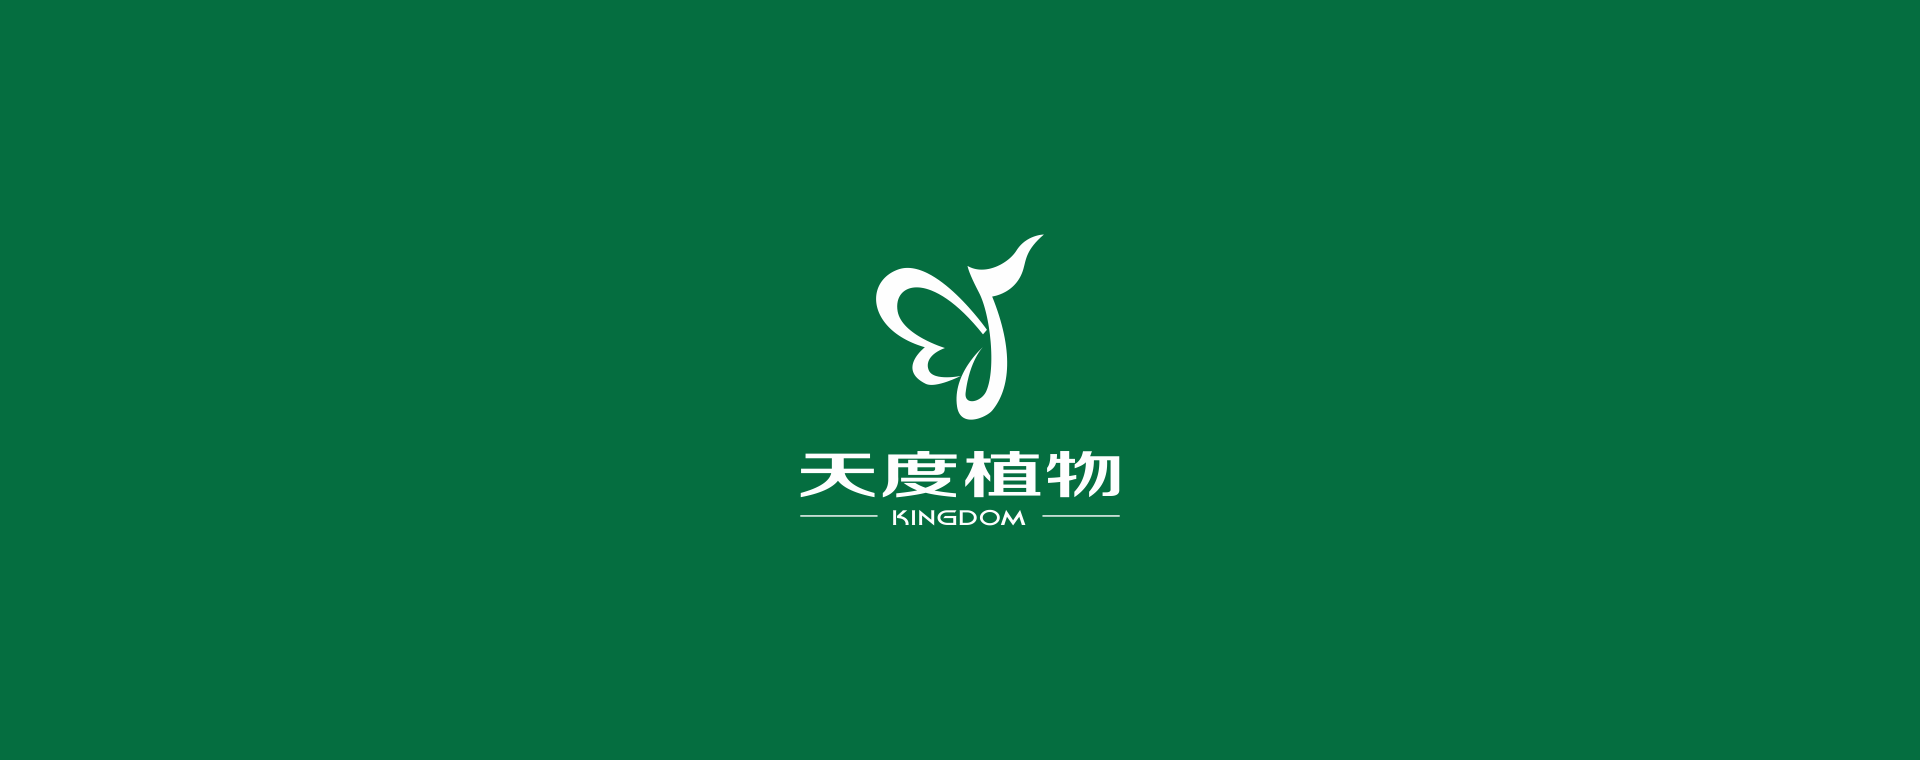 綠色植物logo設計案例圖片分享